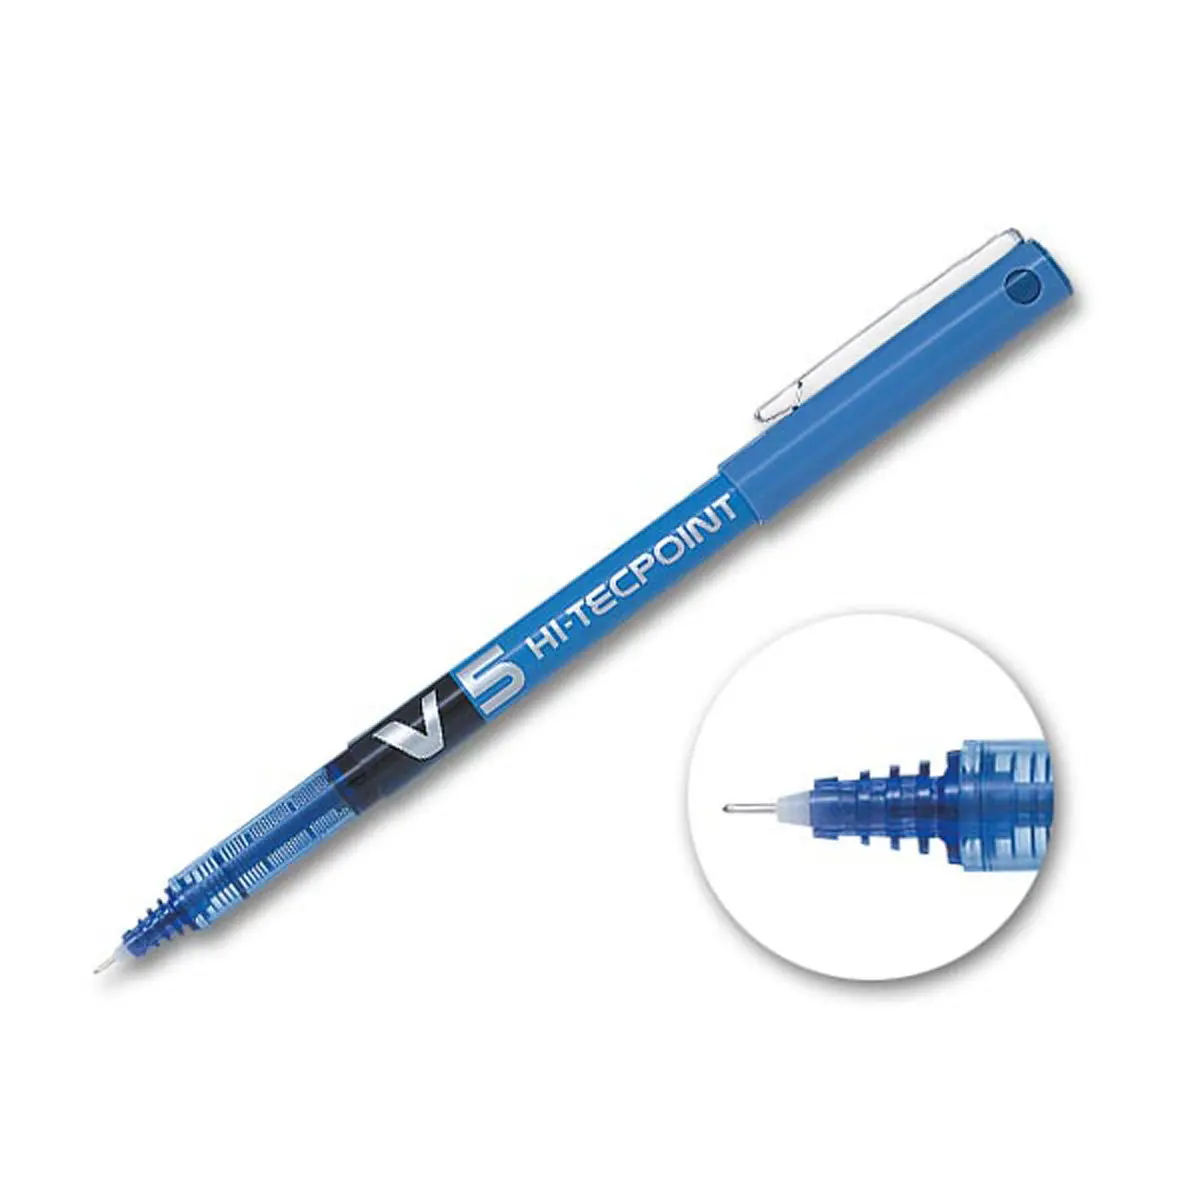 Stylo roller pointe aiguille V5 Hi-tecpoint - Écriture fine - Bleu - PILOT photo du produit